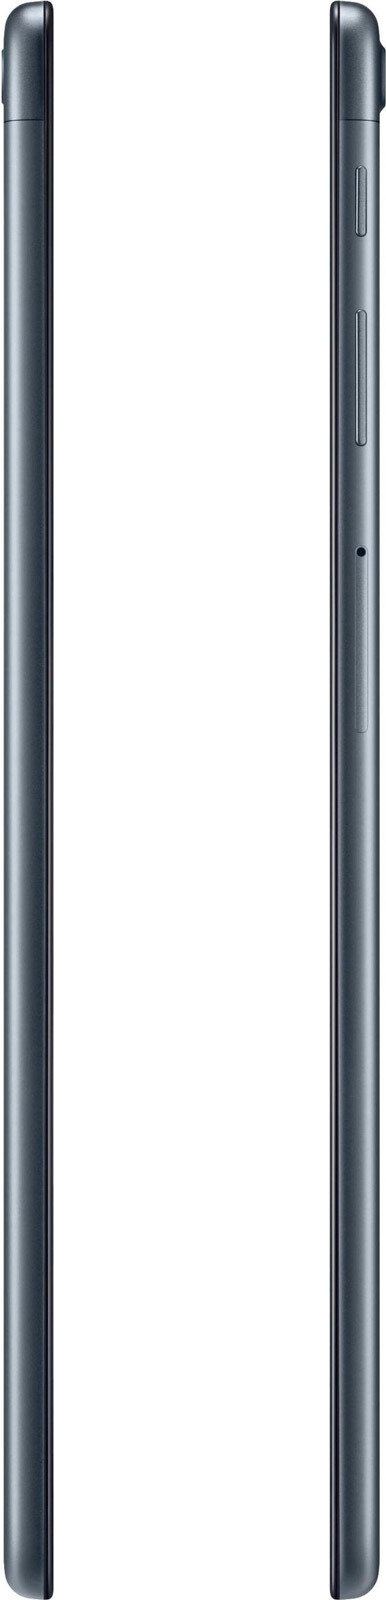 Планшет Samsung Galaxy Tab A 101 SM-T515 (2019)